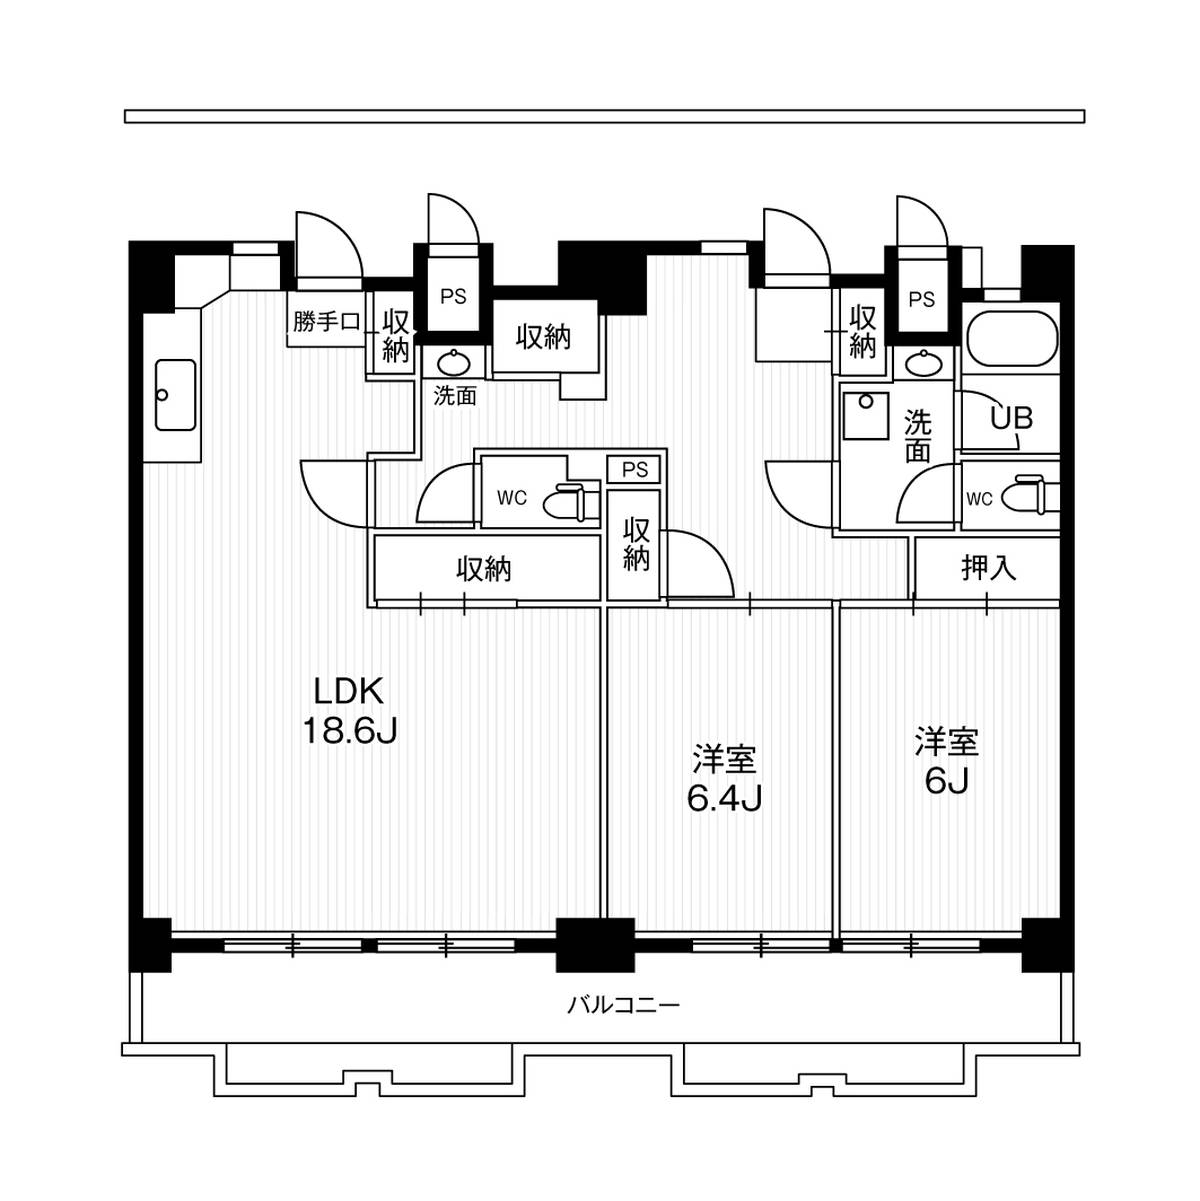 2LDK floorplan of Village House Ichinomiya Tower in Ichinomiya-shi